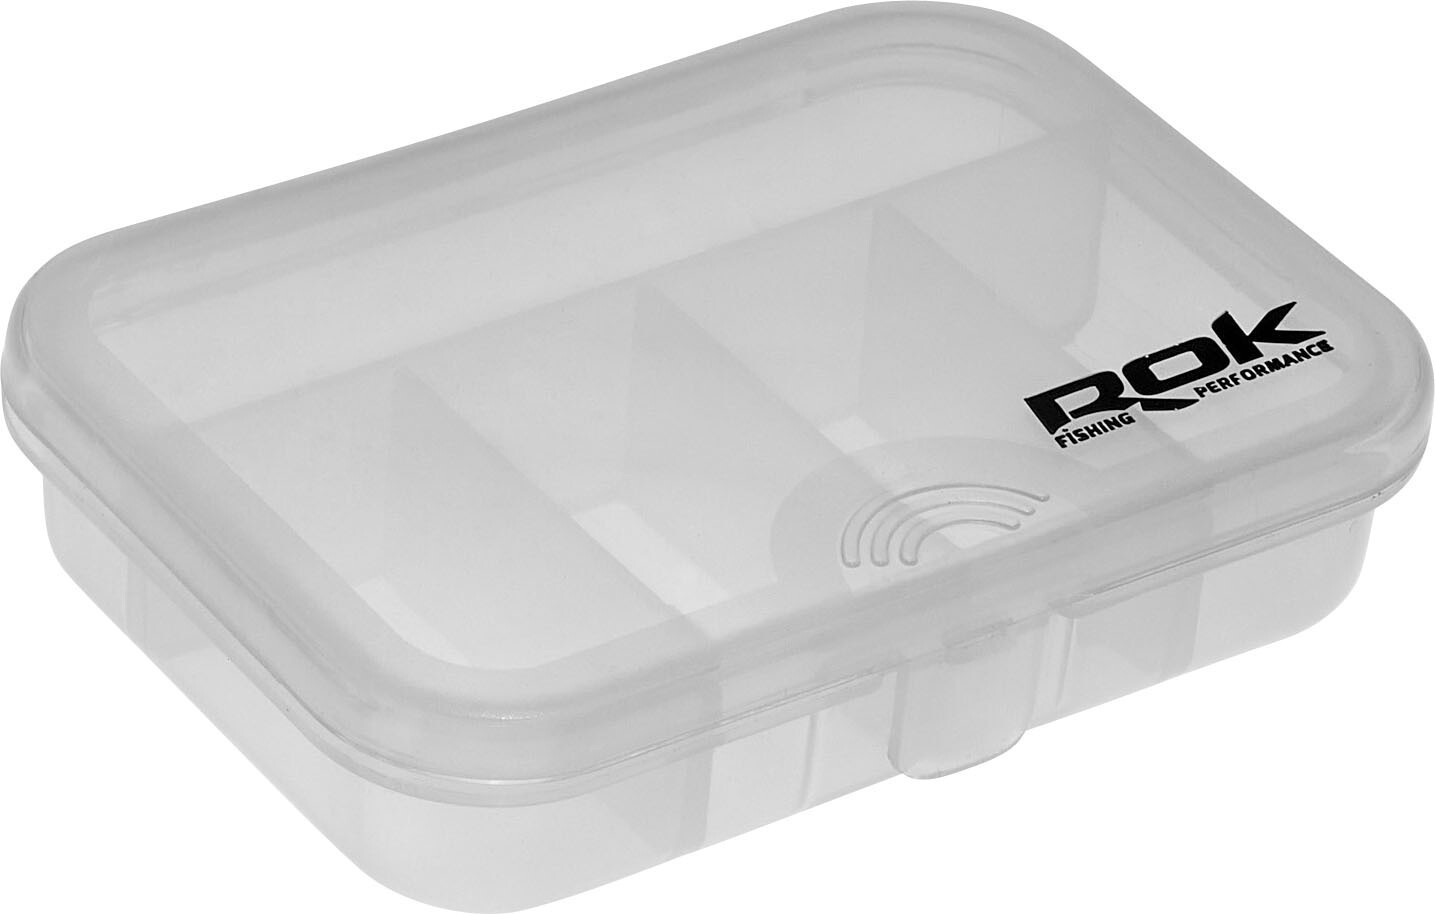 ROK STORAGE BOX XS305 - öt rekeszes mini tároló doboz - 9,1 cm x 6,6 cm x 2,2 cm